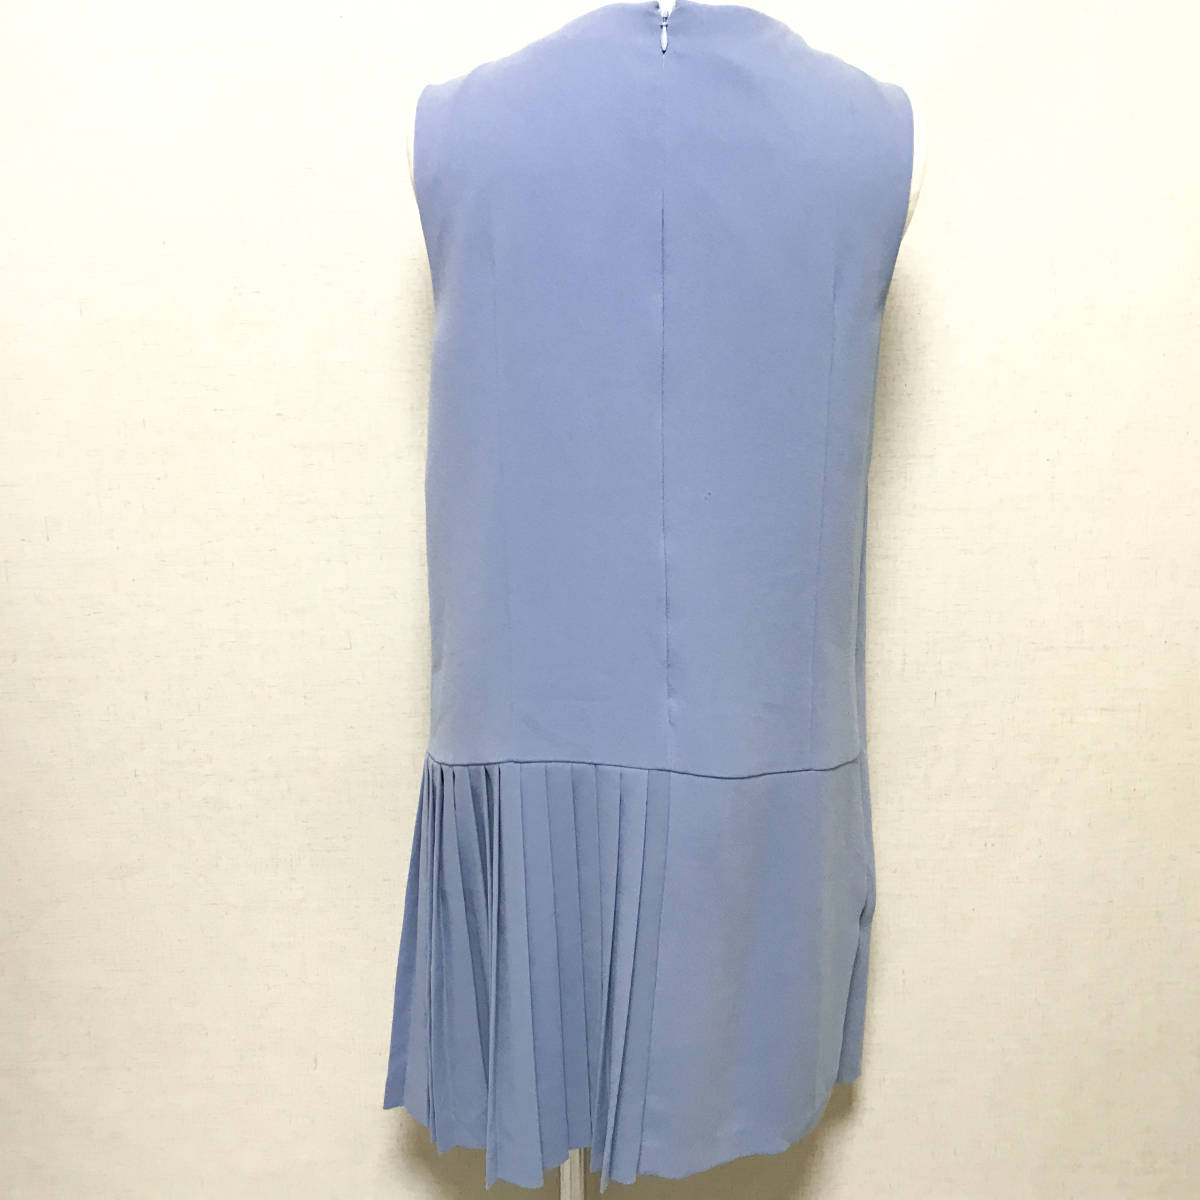  Grace Continental dress dress 38 light blue HNA2206-3-S8-M10